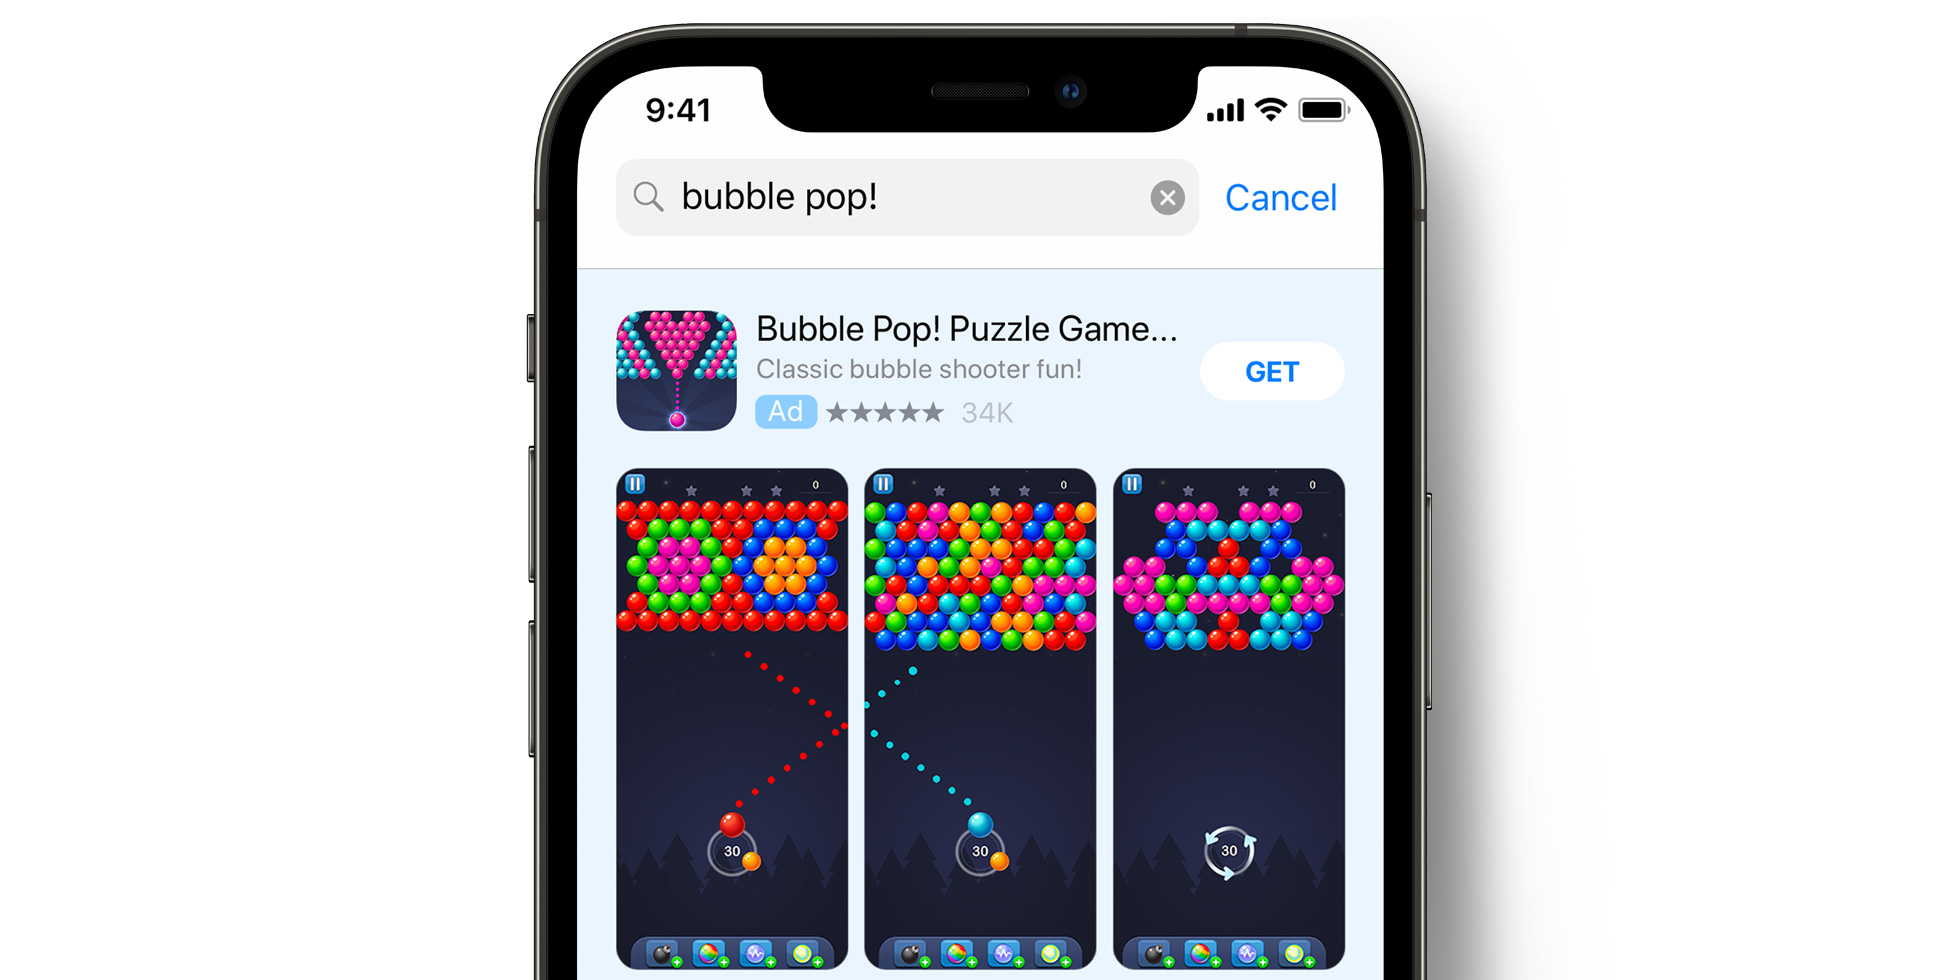 App Store 上的 Bubble Pop! 广告